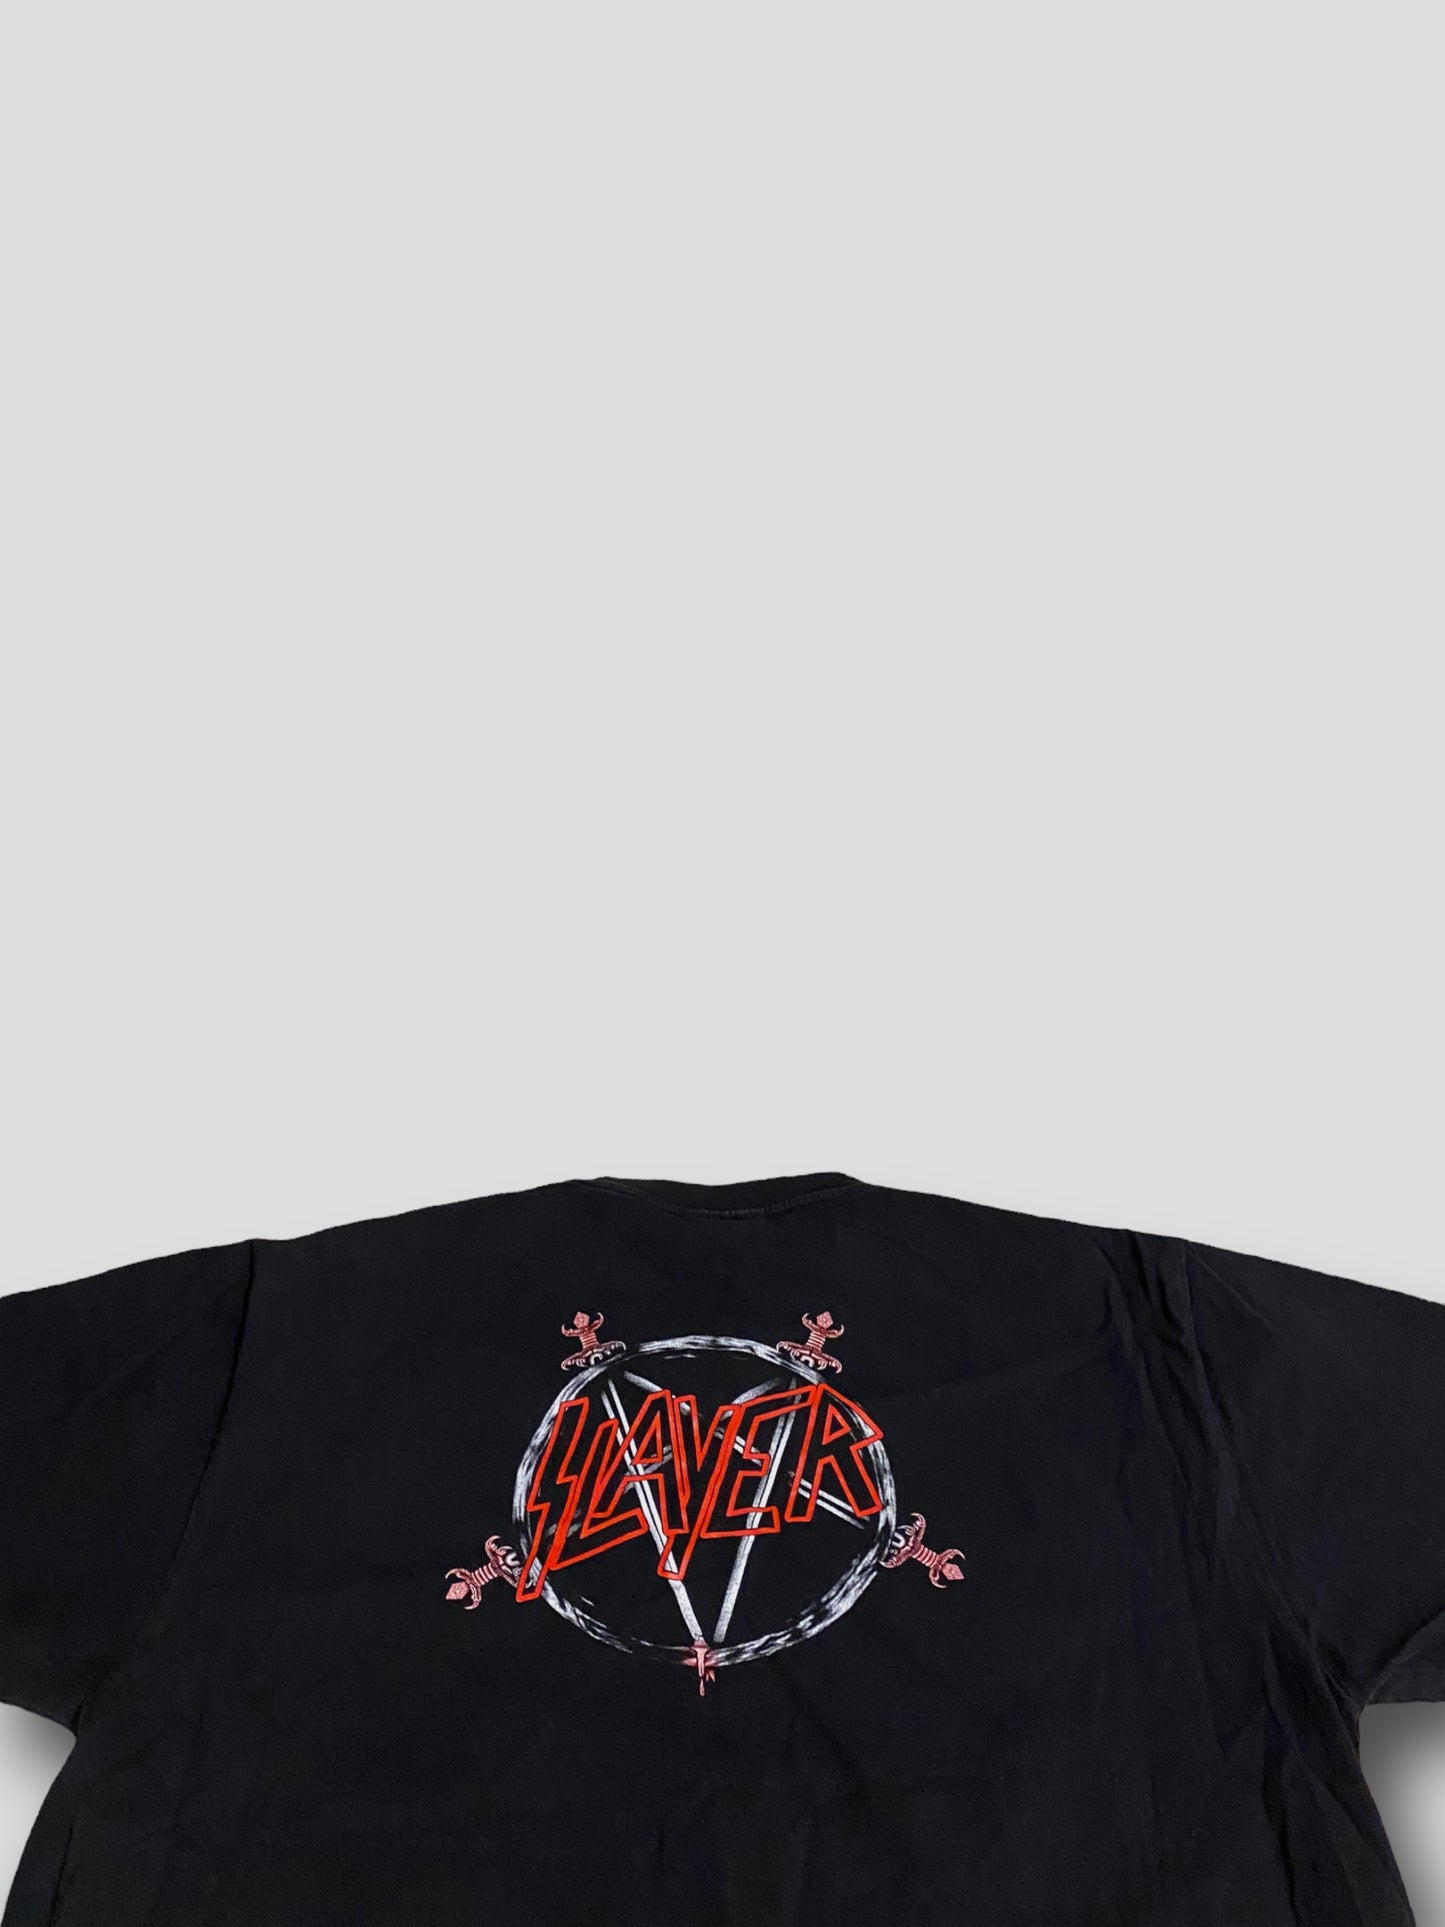 Slayer T-paita (L/XL)